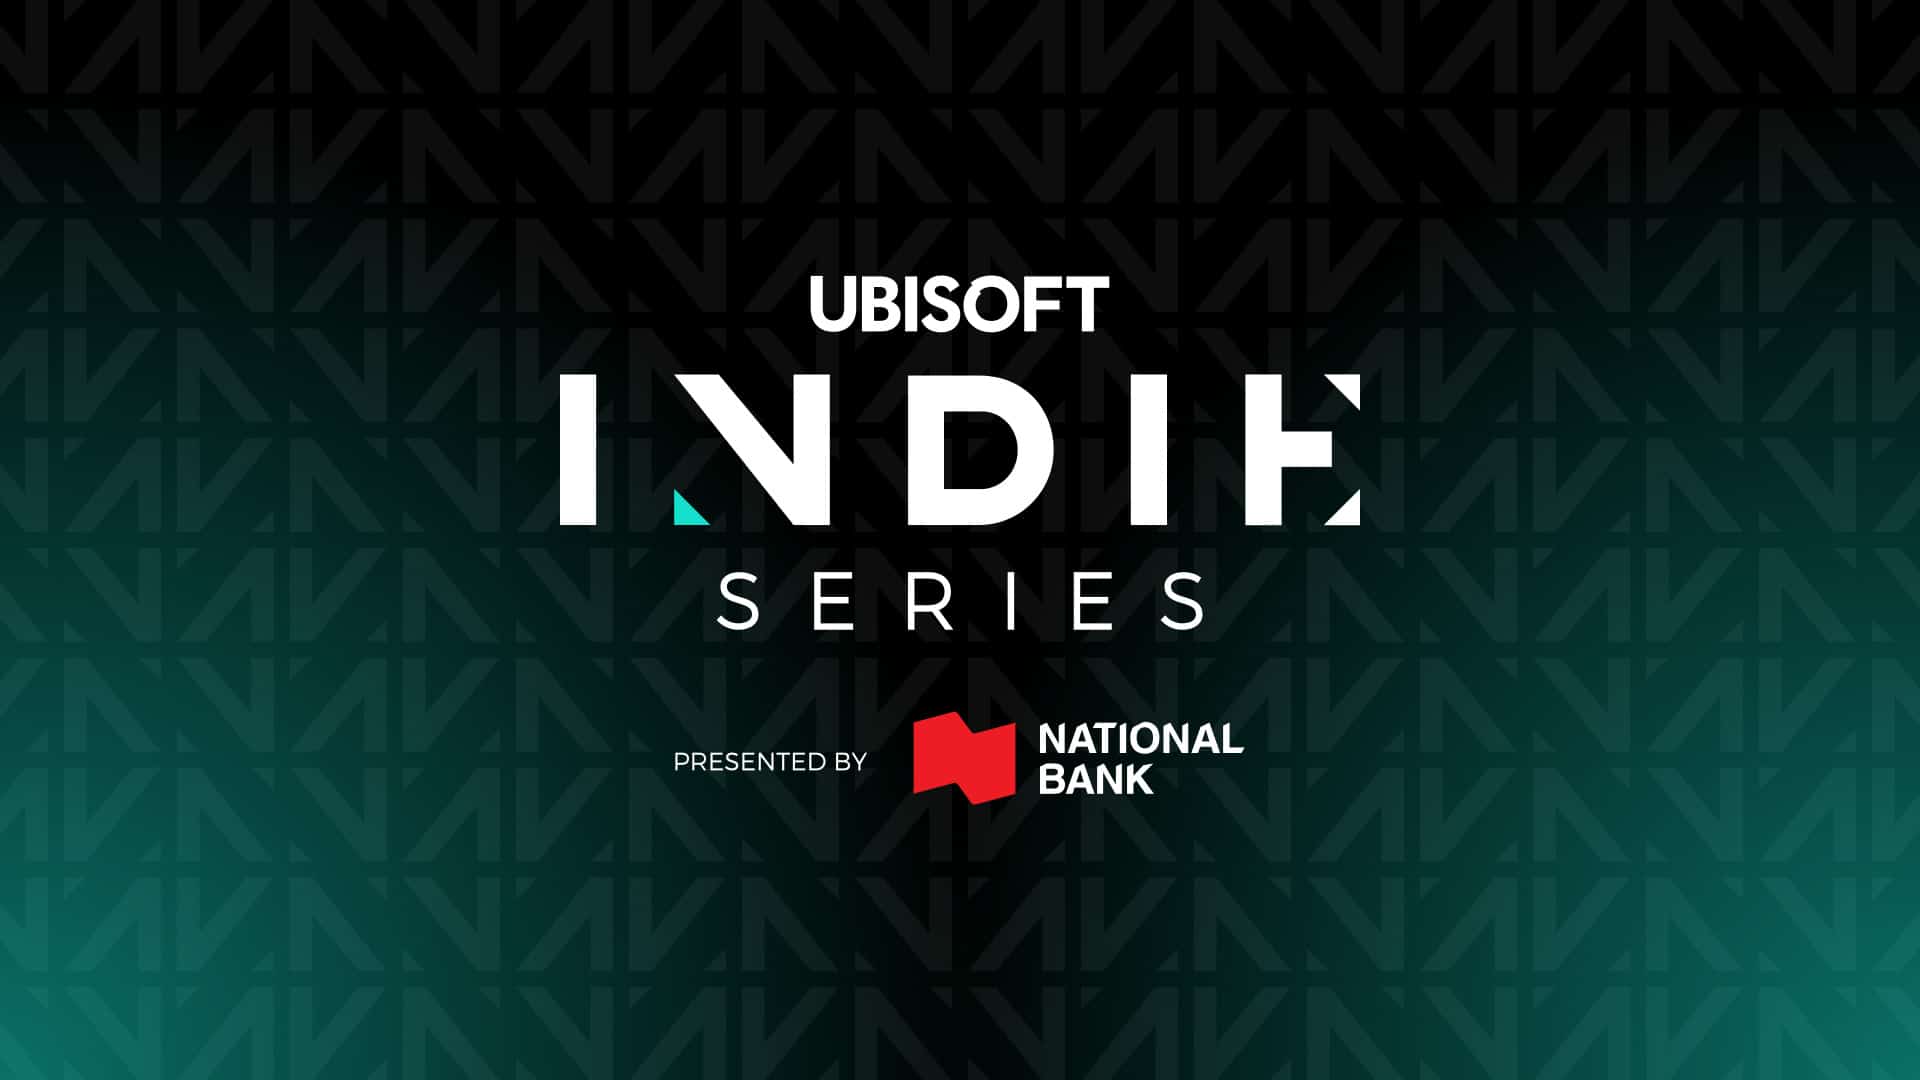 Ubisoft-Indie-Series-1920x1080-1